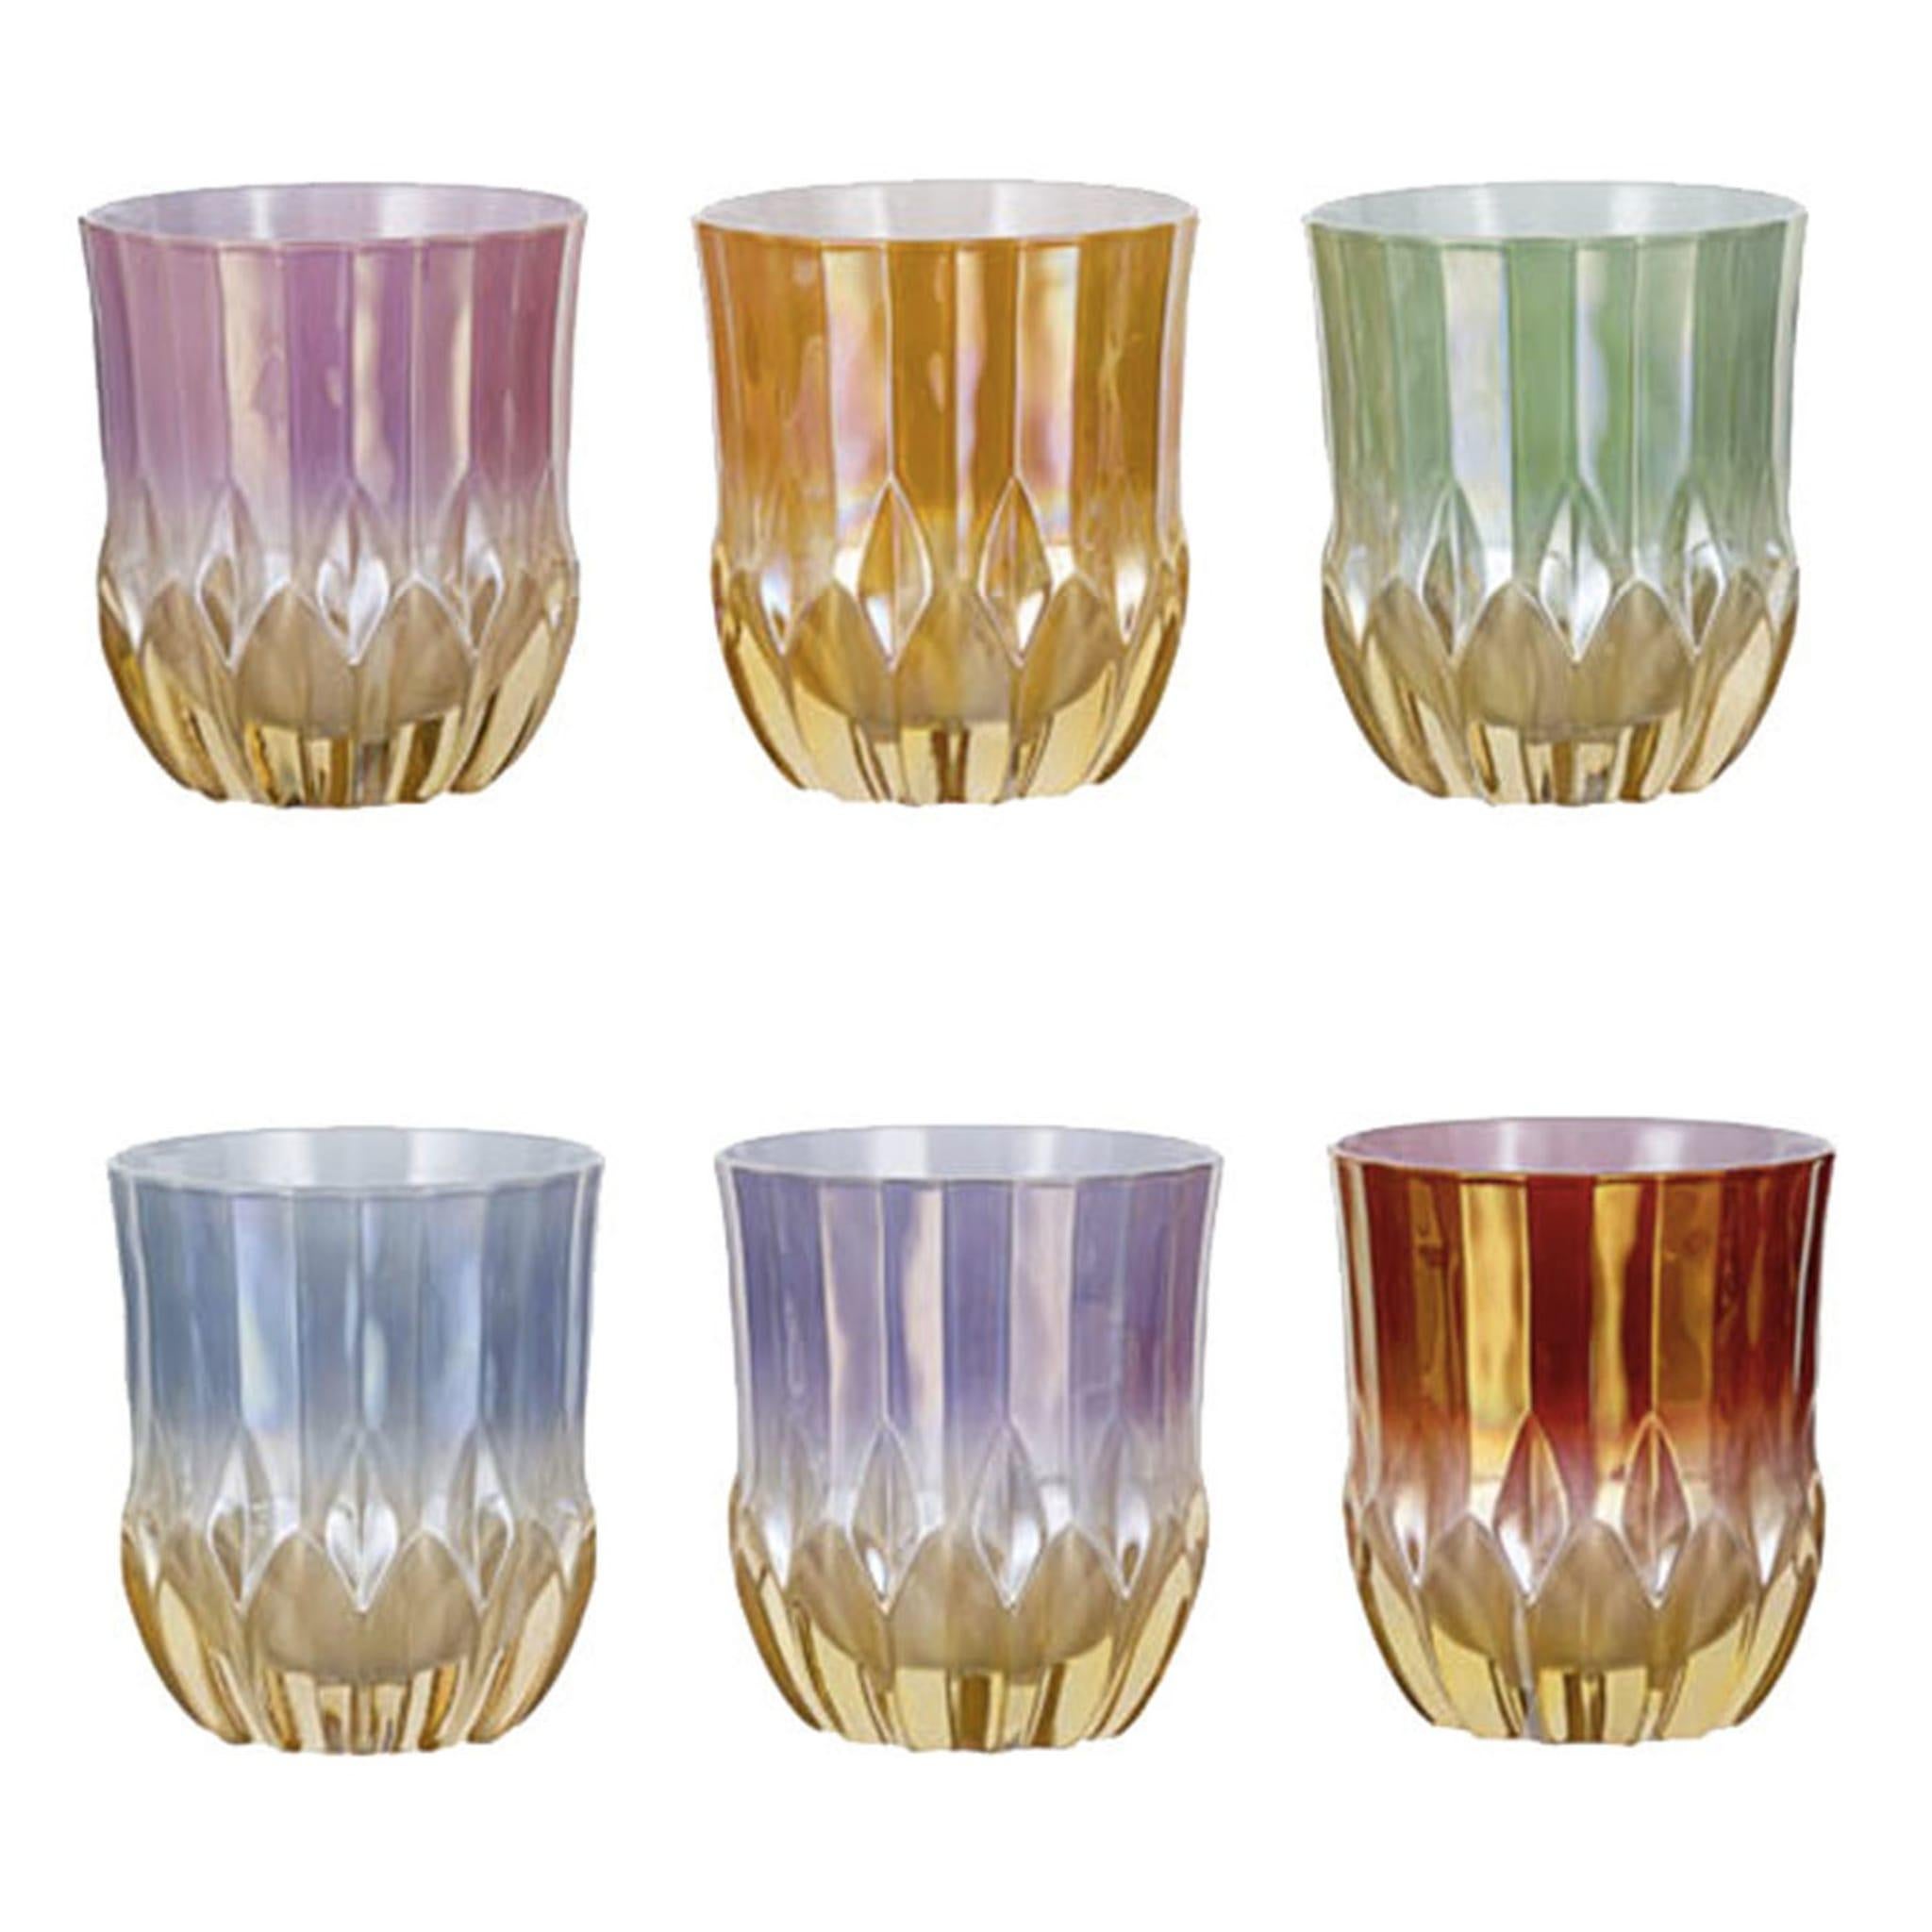 Dieses kostbare und farbenfrohe Set besteht aus sechs kurzen Gläsern aus mundgeblasenem Glas, die zum Servieren von Getränken nach dem Essen wie Amaro oder anderen Likören verwendet werden können. Jedes Glas hat einen bernsteinfarbenen Boden, der